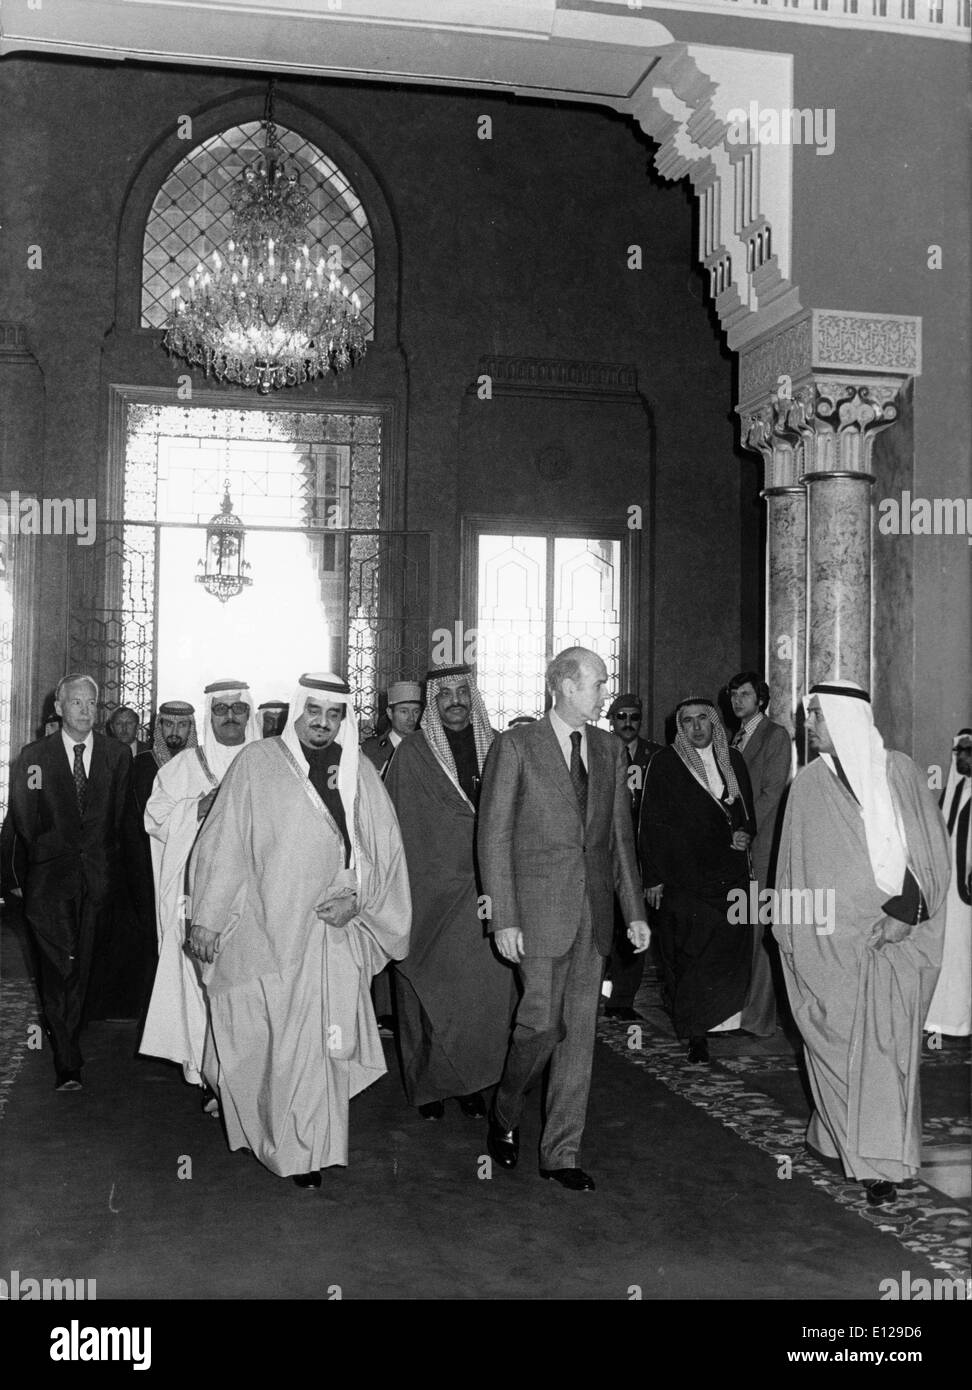 Apr 16, 2009 - La ville de Koweït, Koweït - Le Roi Abdullah bin Abdul Aziz Al Saud. Maison des Saoud est la famille royale du Royaume d'Arabie Saoudite. La nation moderne d'Arabie saoudite a été créé en 1932, si les racines et l'influence pour la Maison des Saoud a été plantée dans la péninsule arabe plusieurs siècles plus tôt. Avant l'ère du fondateur du royaume, Abdul-Aziz ibn Saud, la famille a jugé le Nejd et avait à plusieurs reprises en conflit avec l'Empire Ottoman, le Chérif de La Mecque, et la famille Al Rashid de Ha'il Banque D'Images